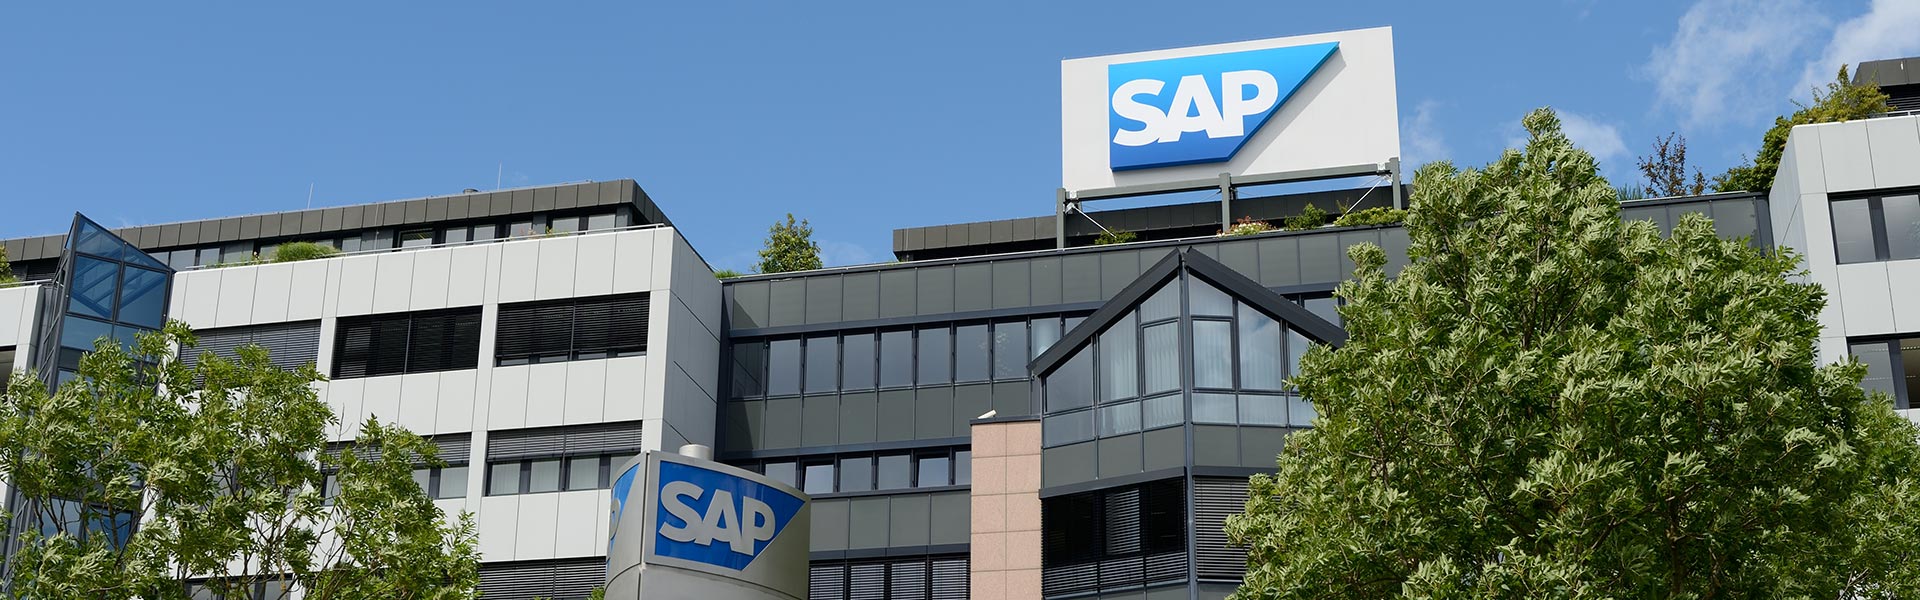 SAP Cast 70 – Busca pelo crescimento